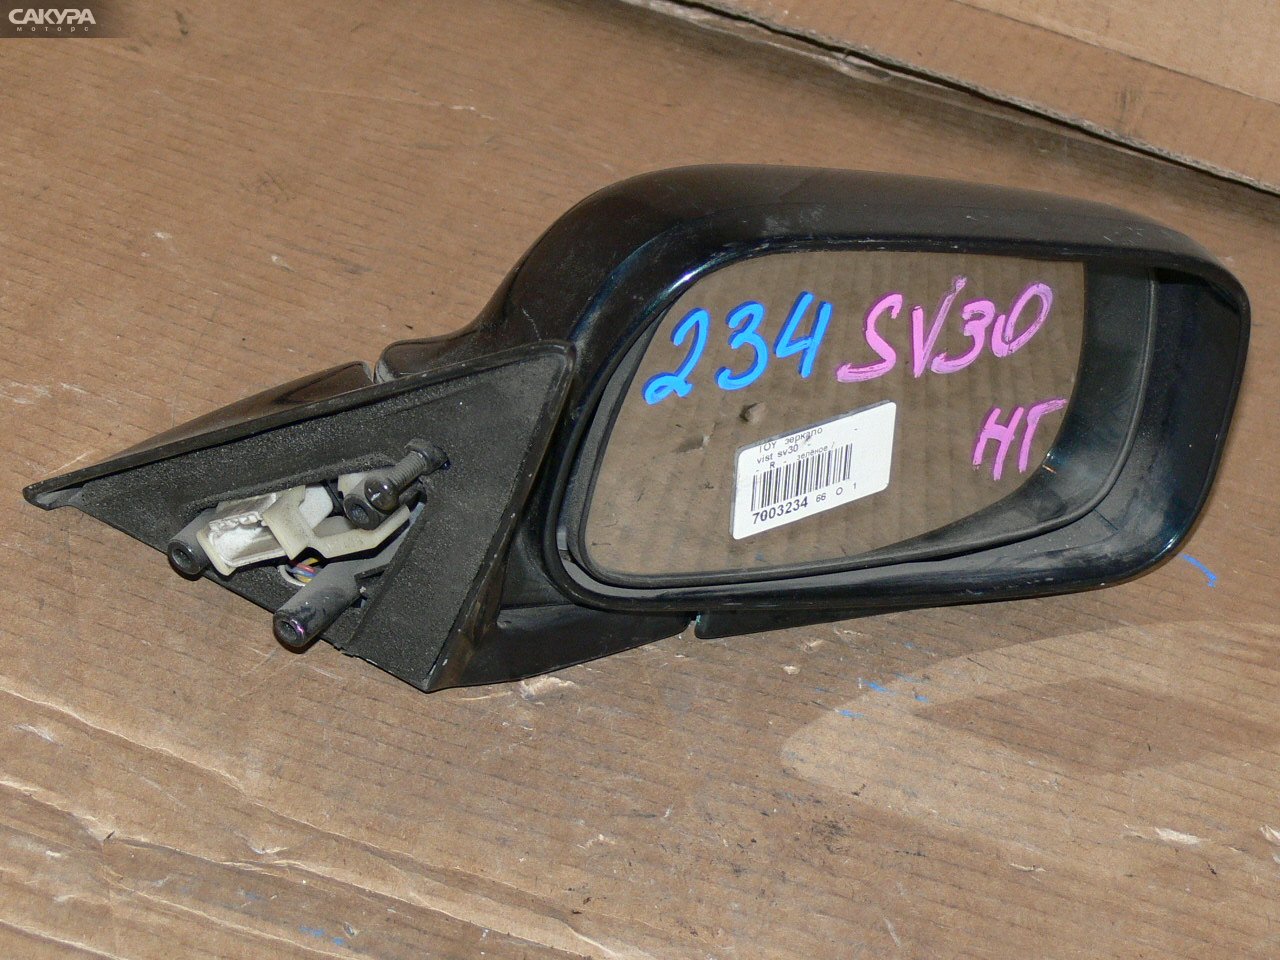 Зеркало боковое правое Toyota Vista SV30: купить в Сакура Иркутск.